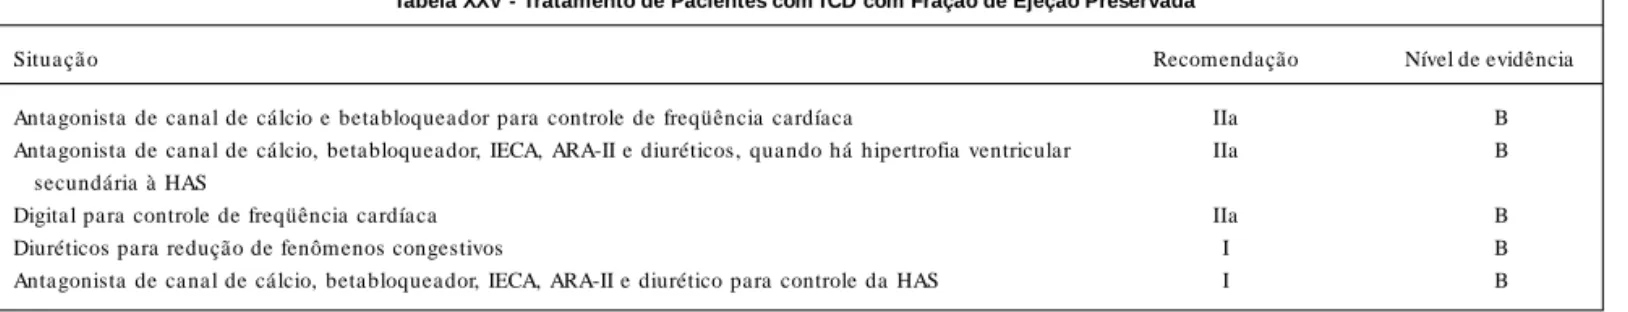 Tabela XXV - Tratamento de Pacientes com ICD com Fração de Ejeção Preservada